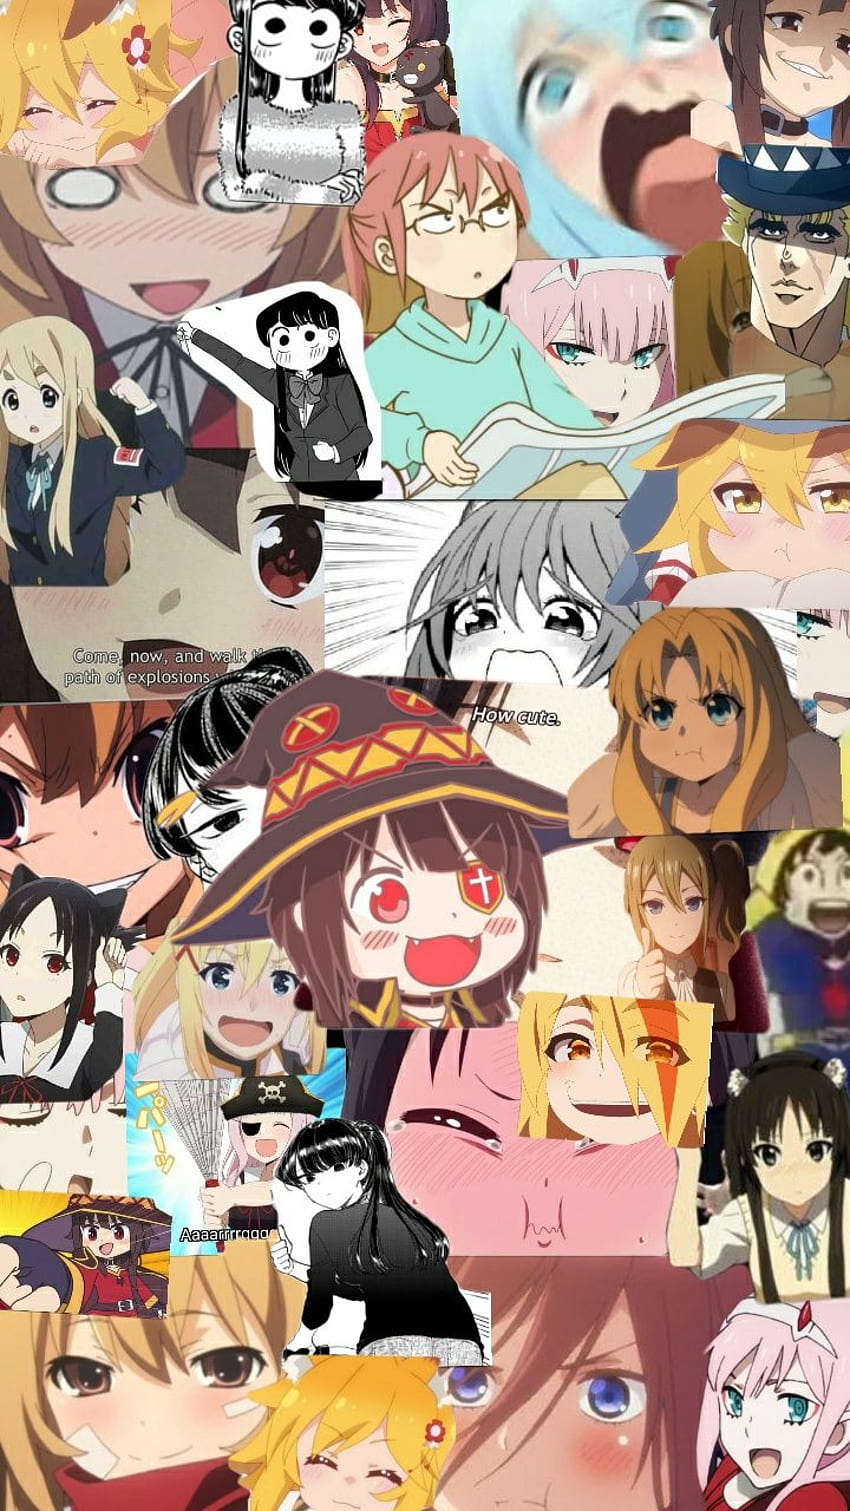 Anime Memes, Anime Wallpaper, Anime Aesthetic